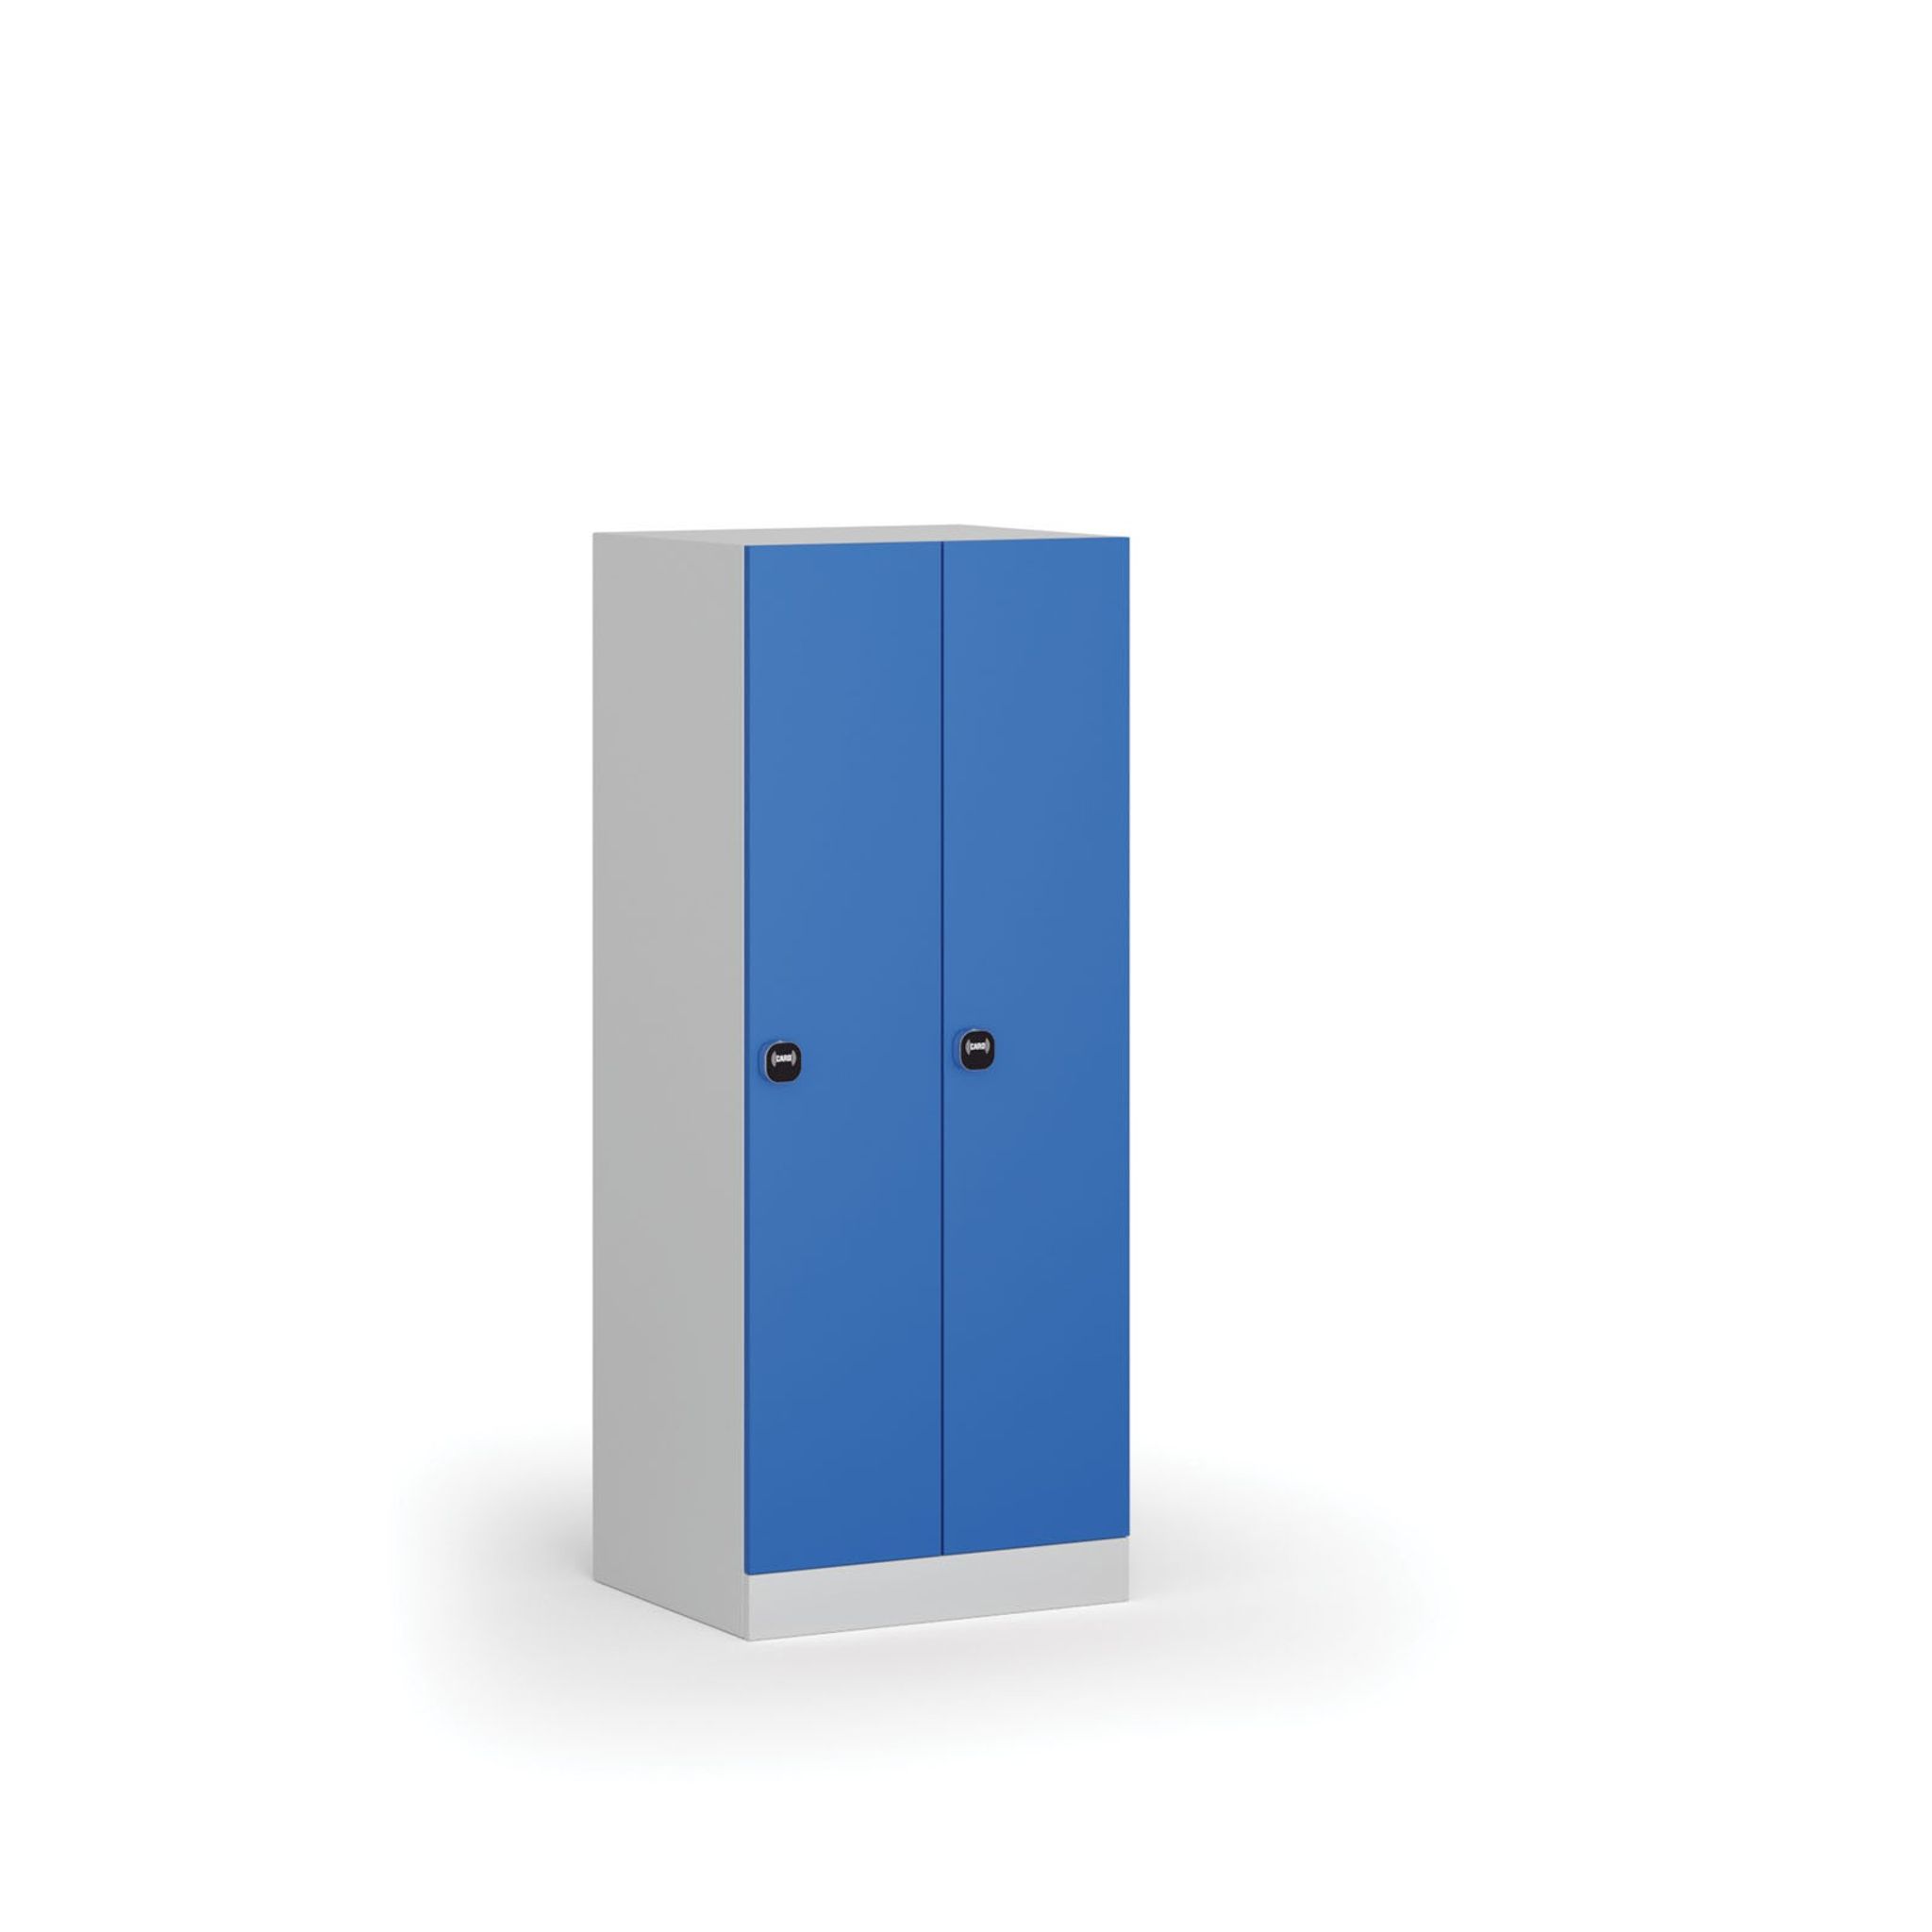 Šatní skříňka snížená, 2 oddíly, 1500 x 600 x 500 mm, zámek s čtečkou RFID karet, modré dveře